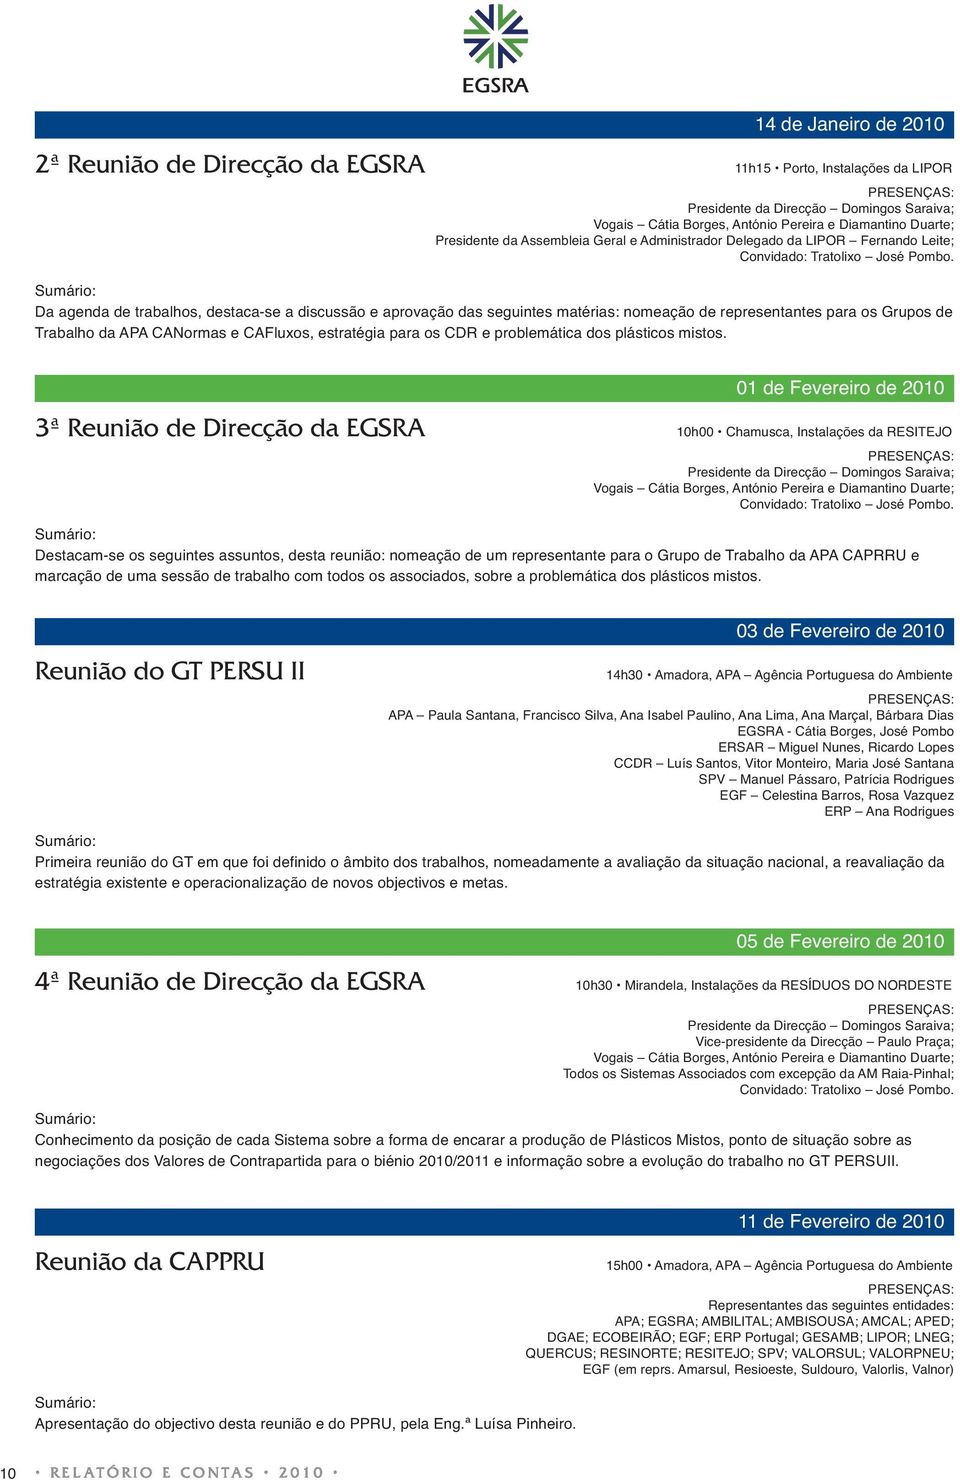 Da agenda de trabalhos, destaca-se a discussão e aprovação das seguintes matérias: nomeação de representantes para os Grupos de Trabalho da APA CANormas e CAFluxos, estratégia para os CDR e